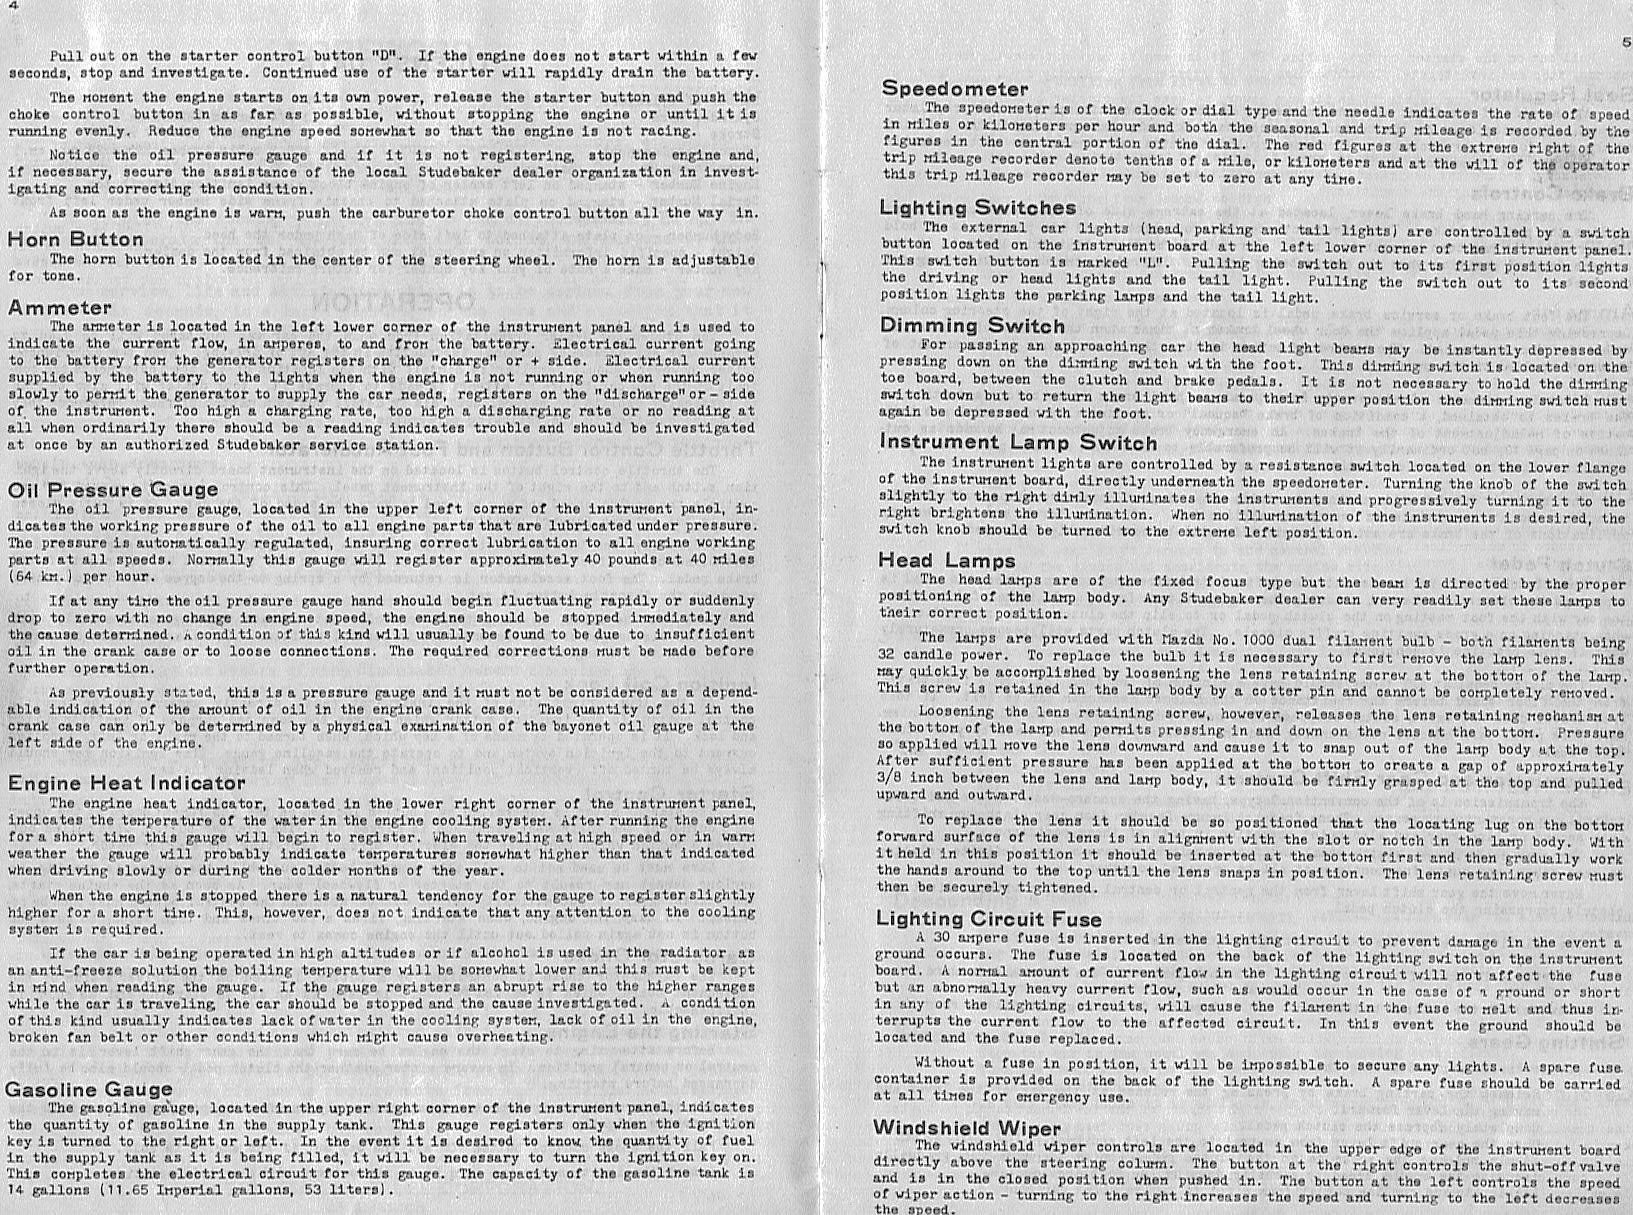 1934 Studebaker Dictator Manual-04-05